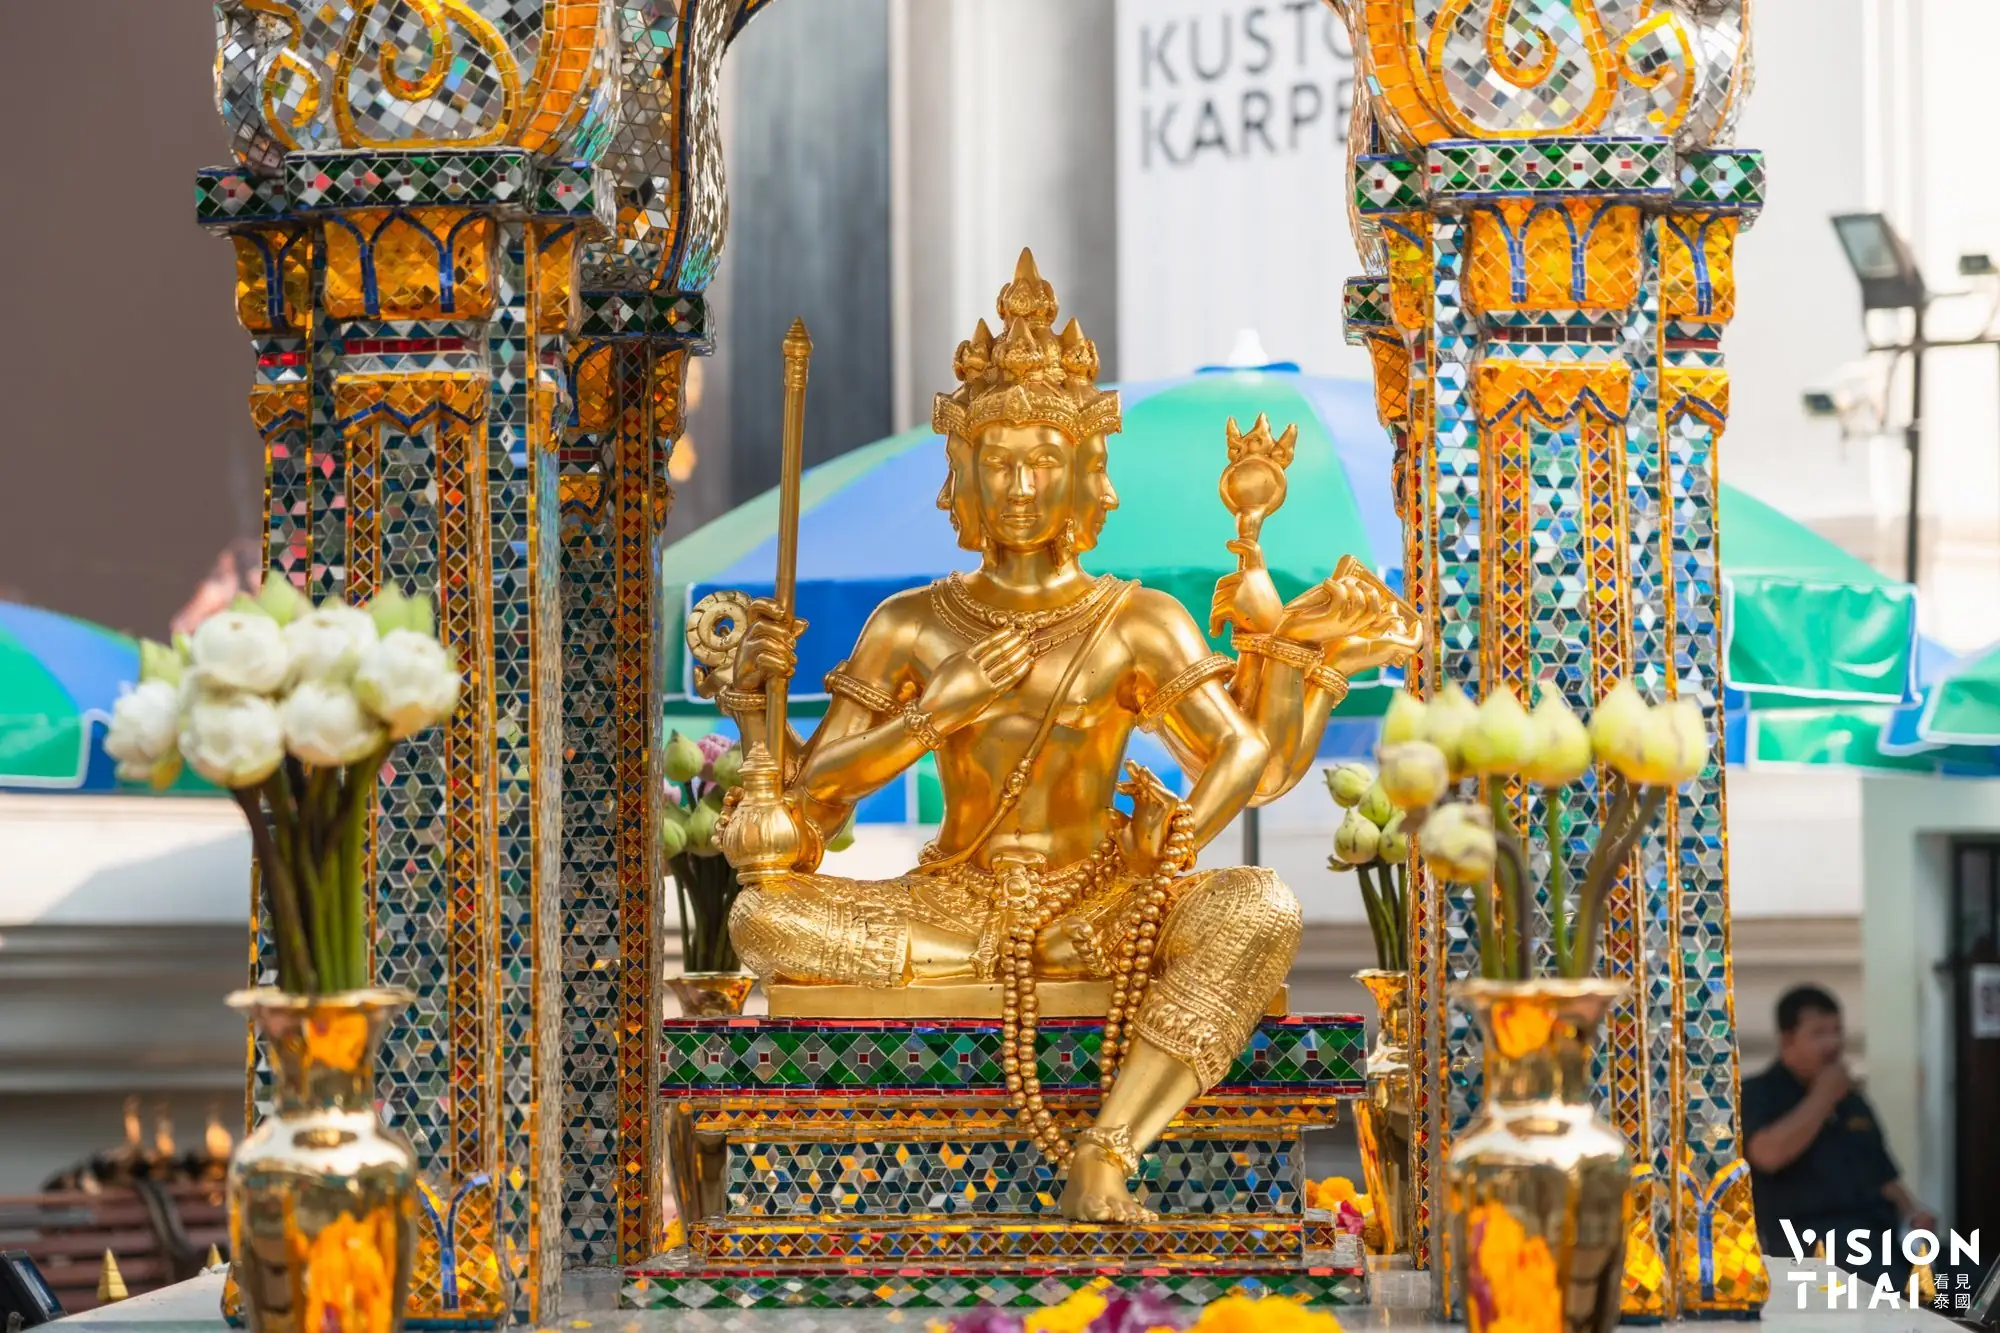 曼谷四面佛梵天位于君悦酒店前，香火鼎盛，而成为著名曼谷景点（图片来源：Vision Thai 看见泰国）